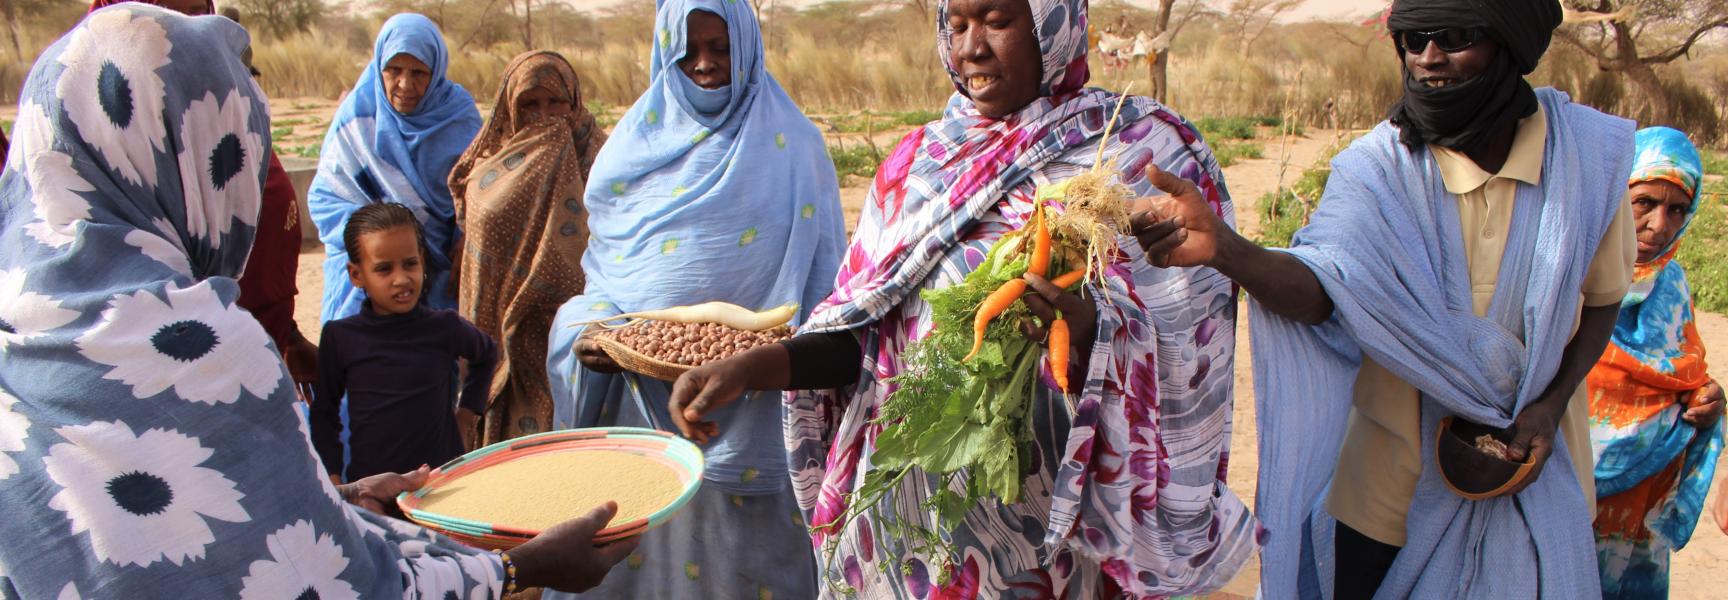 Mujeres vendiendo vegetales y semillas en el mercado Tintane, región de Hodh Ech Chargui, este de Mauritania